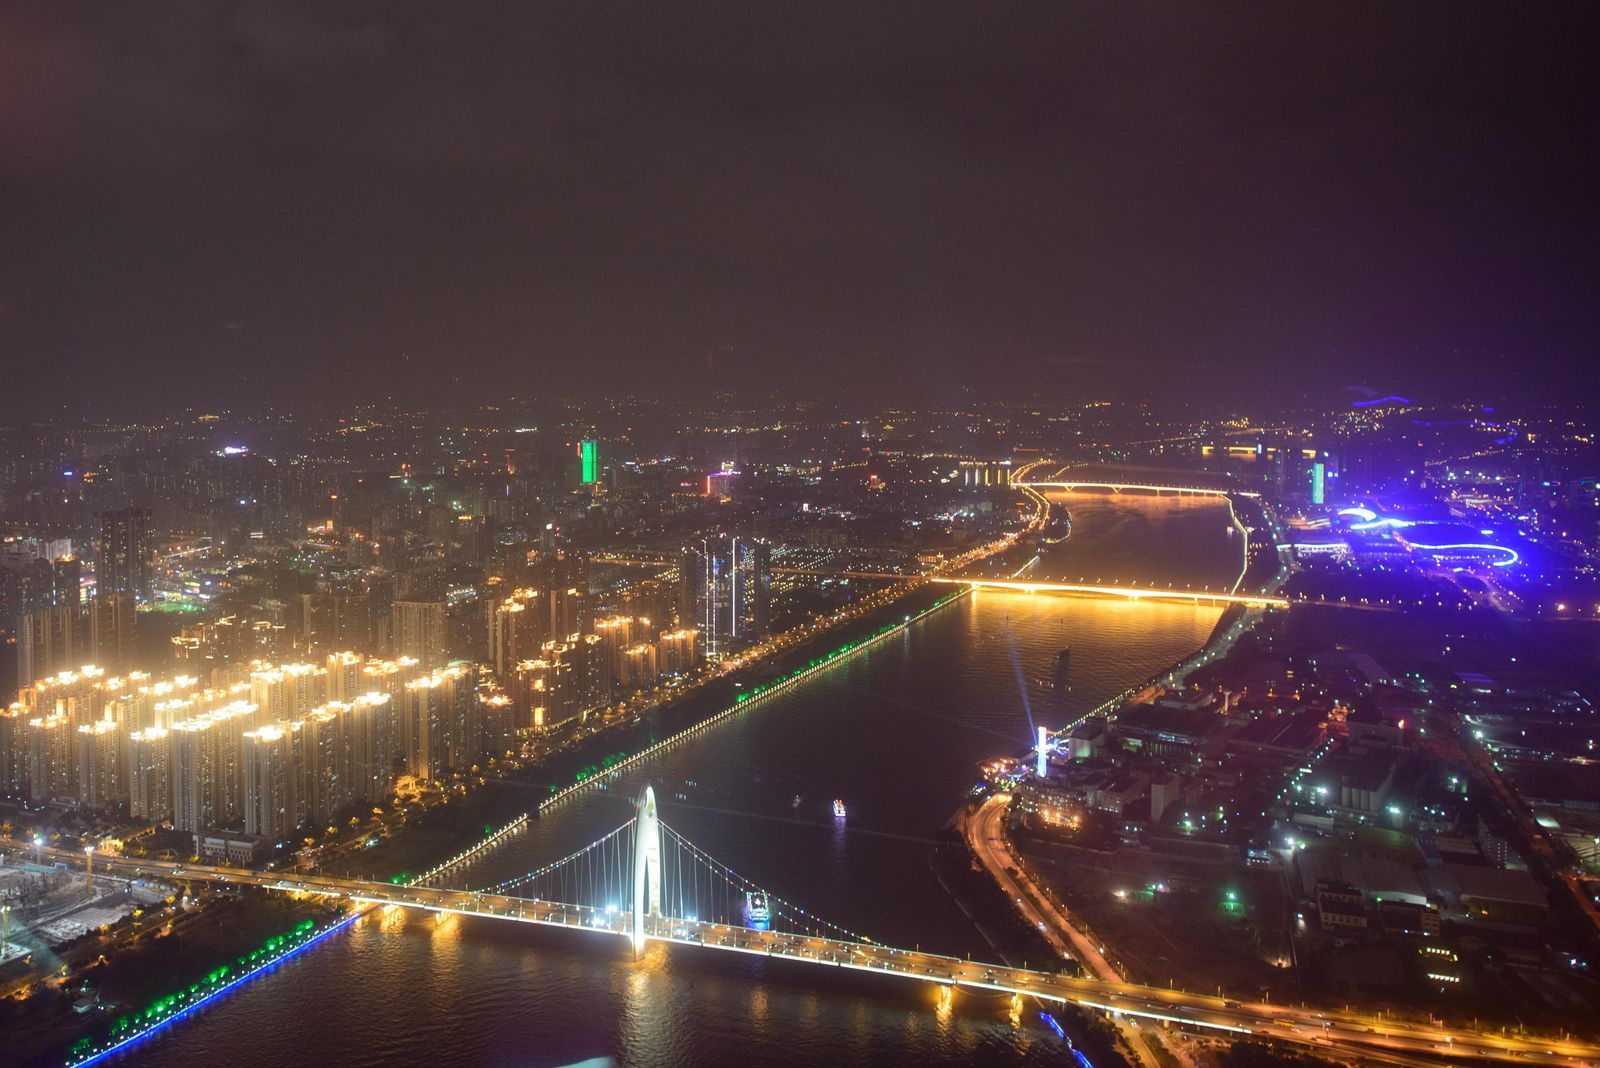  Guangzhou skyline